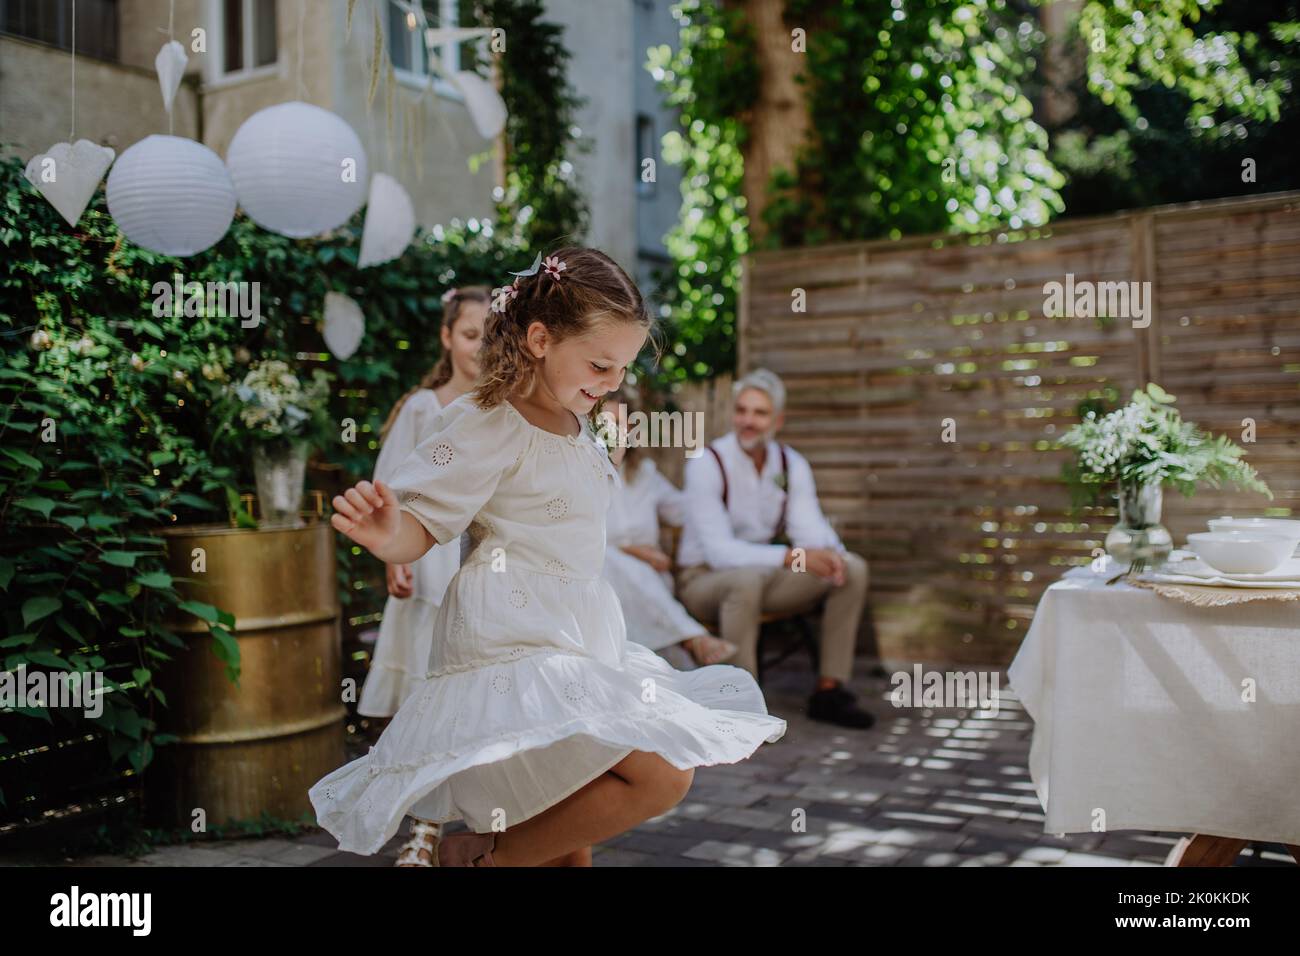 Kleines Kind tanzt und genießt draußen Hochzeitsfeier ihrer Eltern. Stockfoto